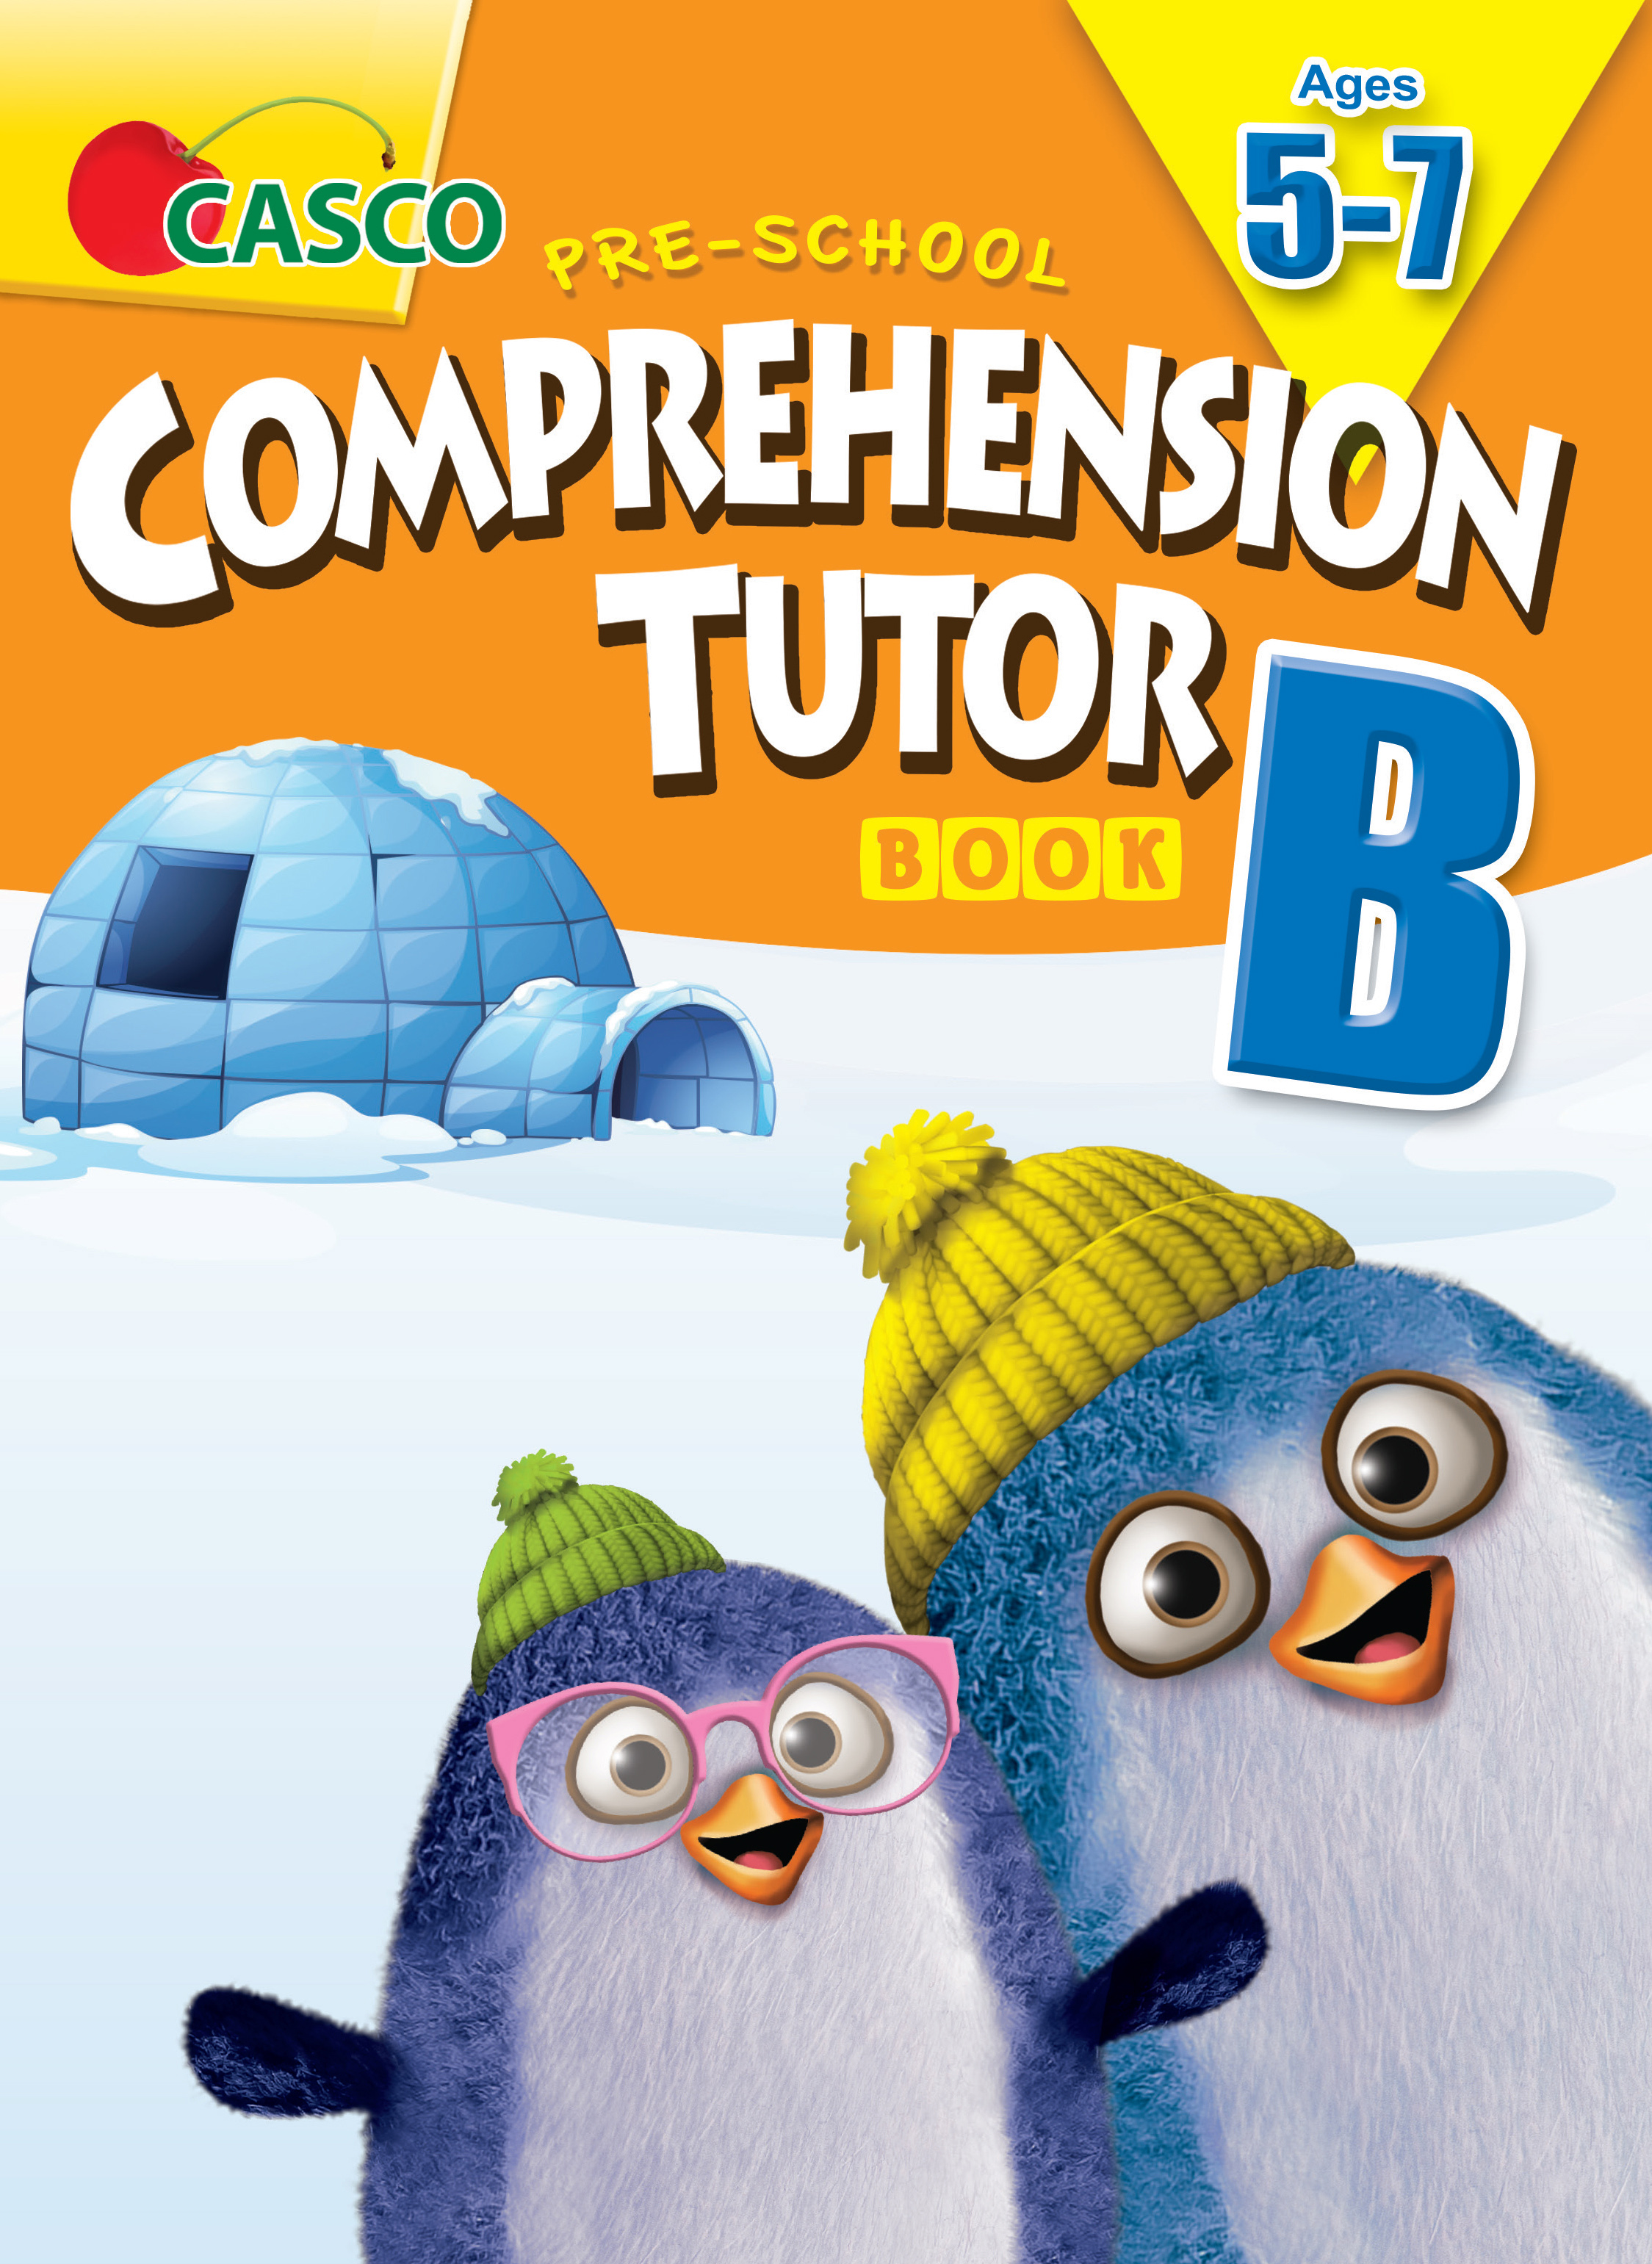 Pre-School Comprehendion Tutor Book B